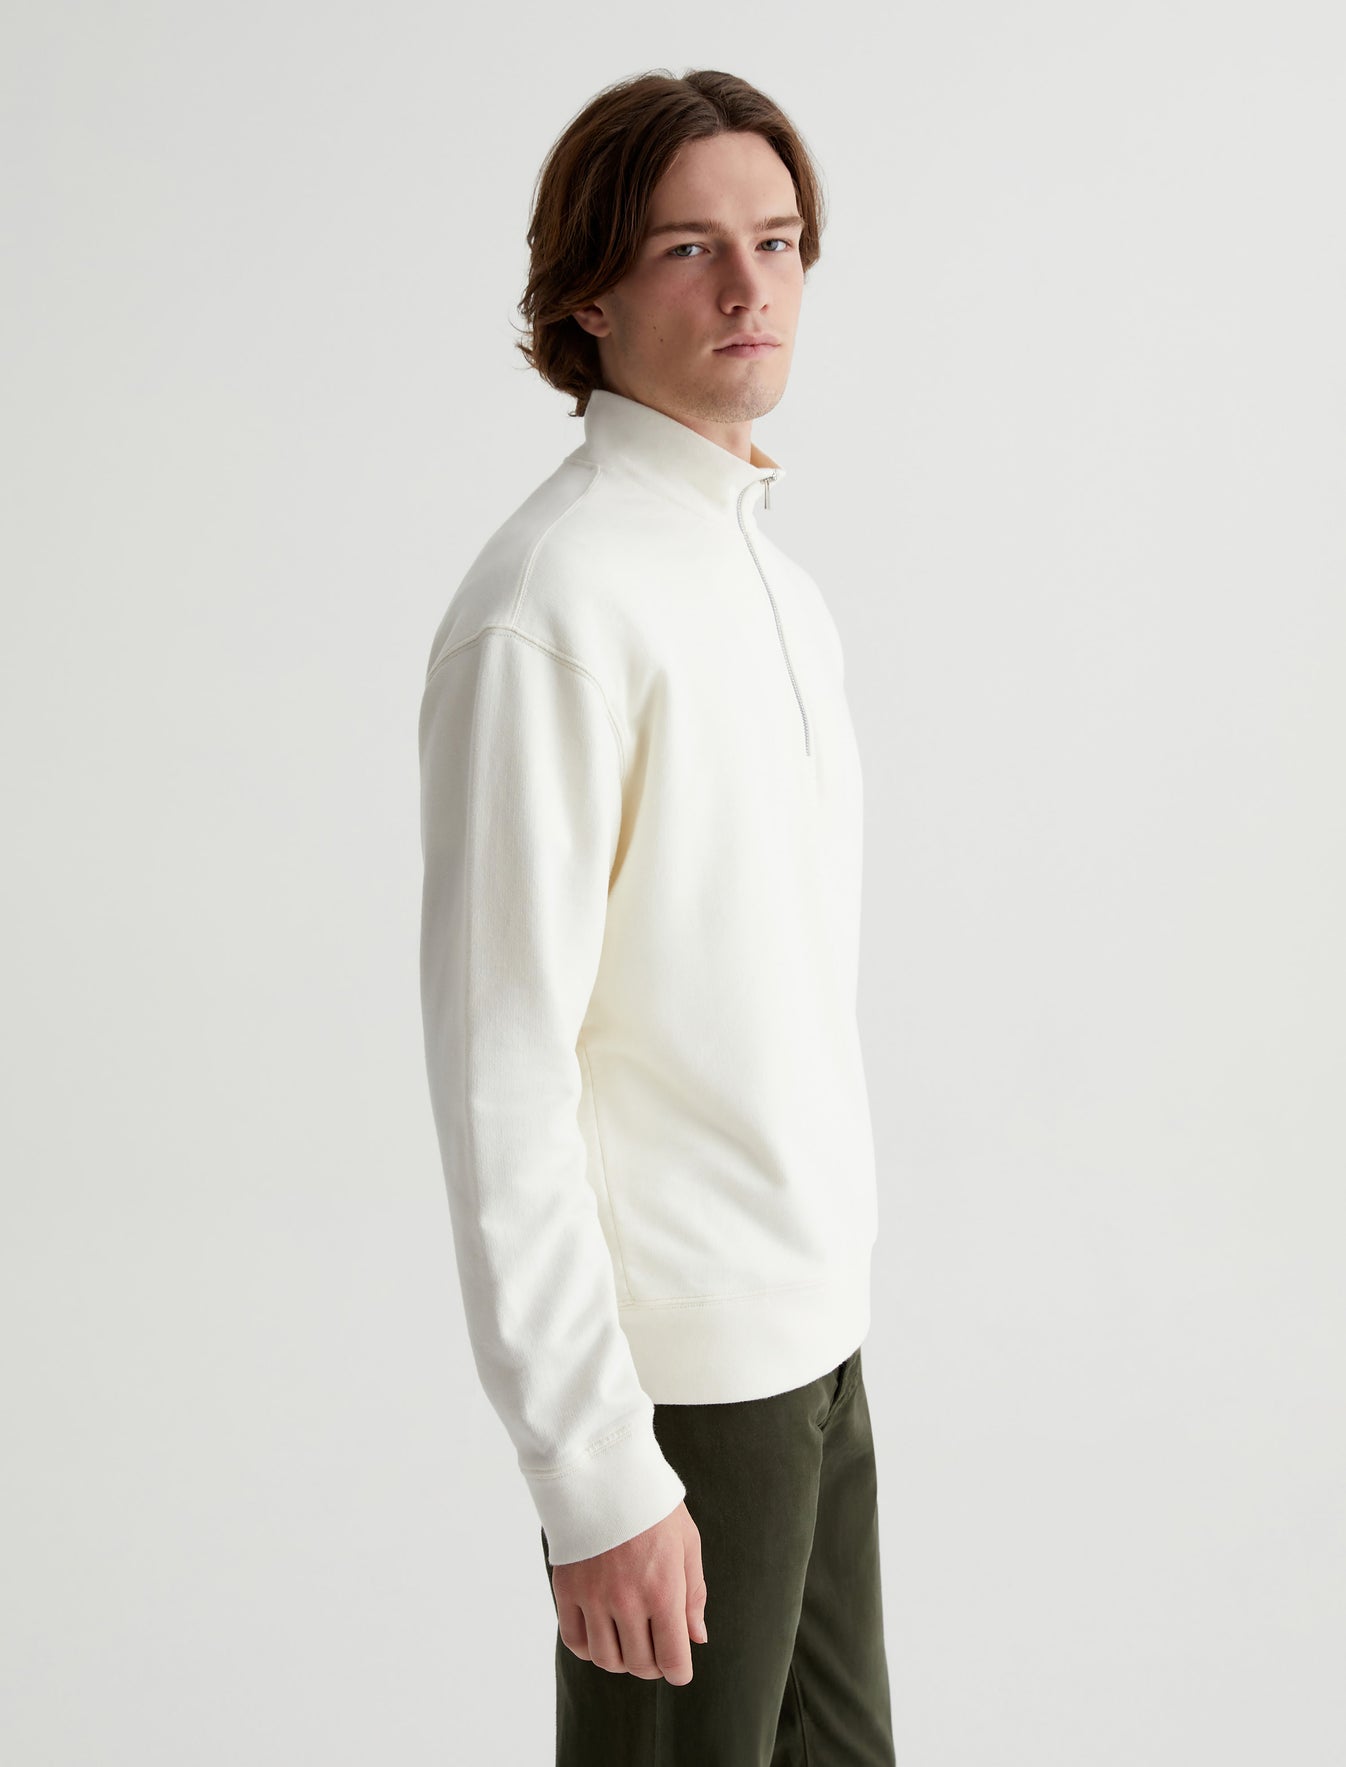 Arc Half Zip Sweatshirt Ivory Dust Relaxed Fit Half Zip Sweatshirt Mens Top Photo 4